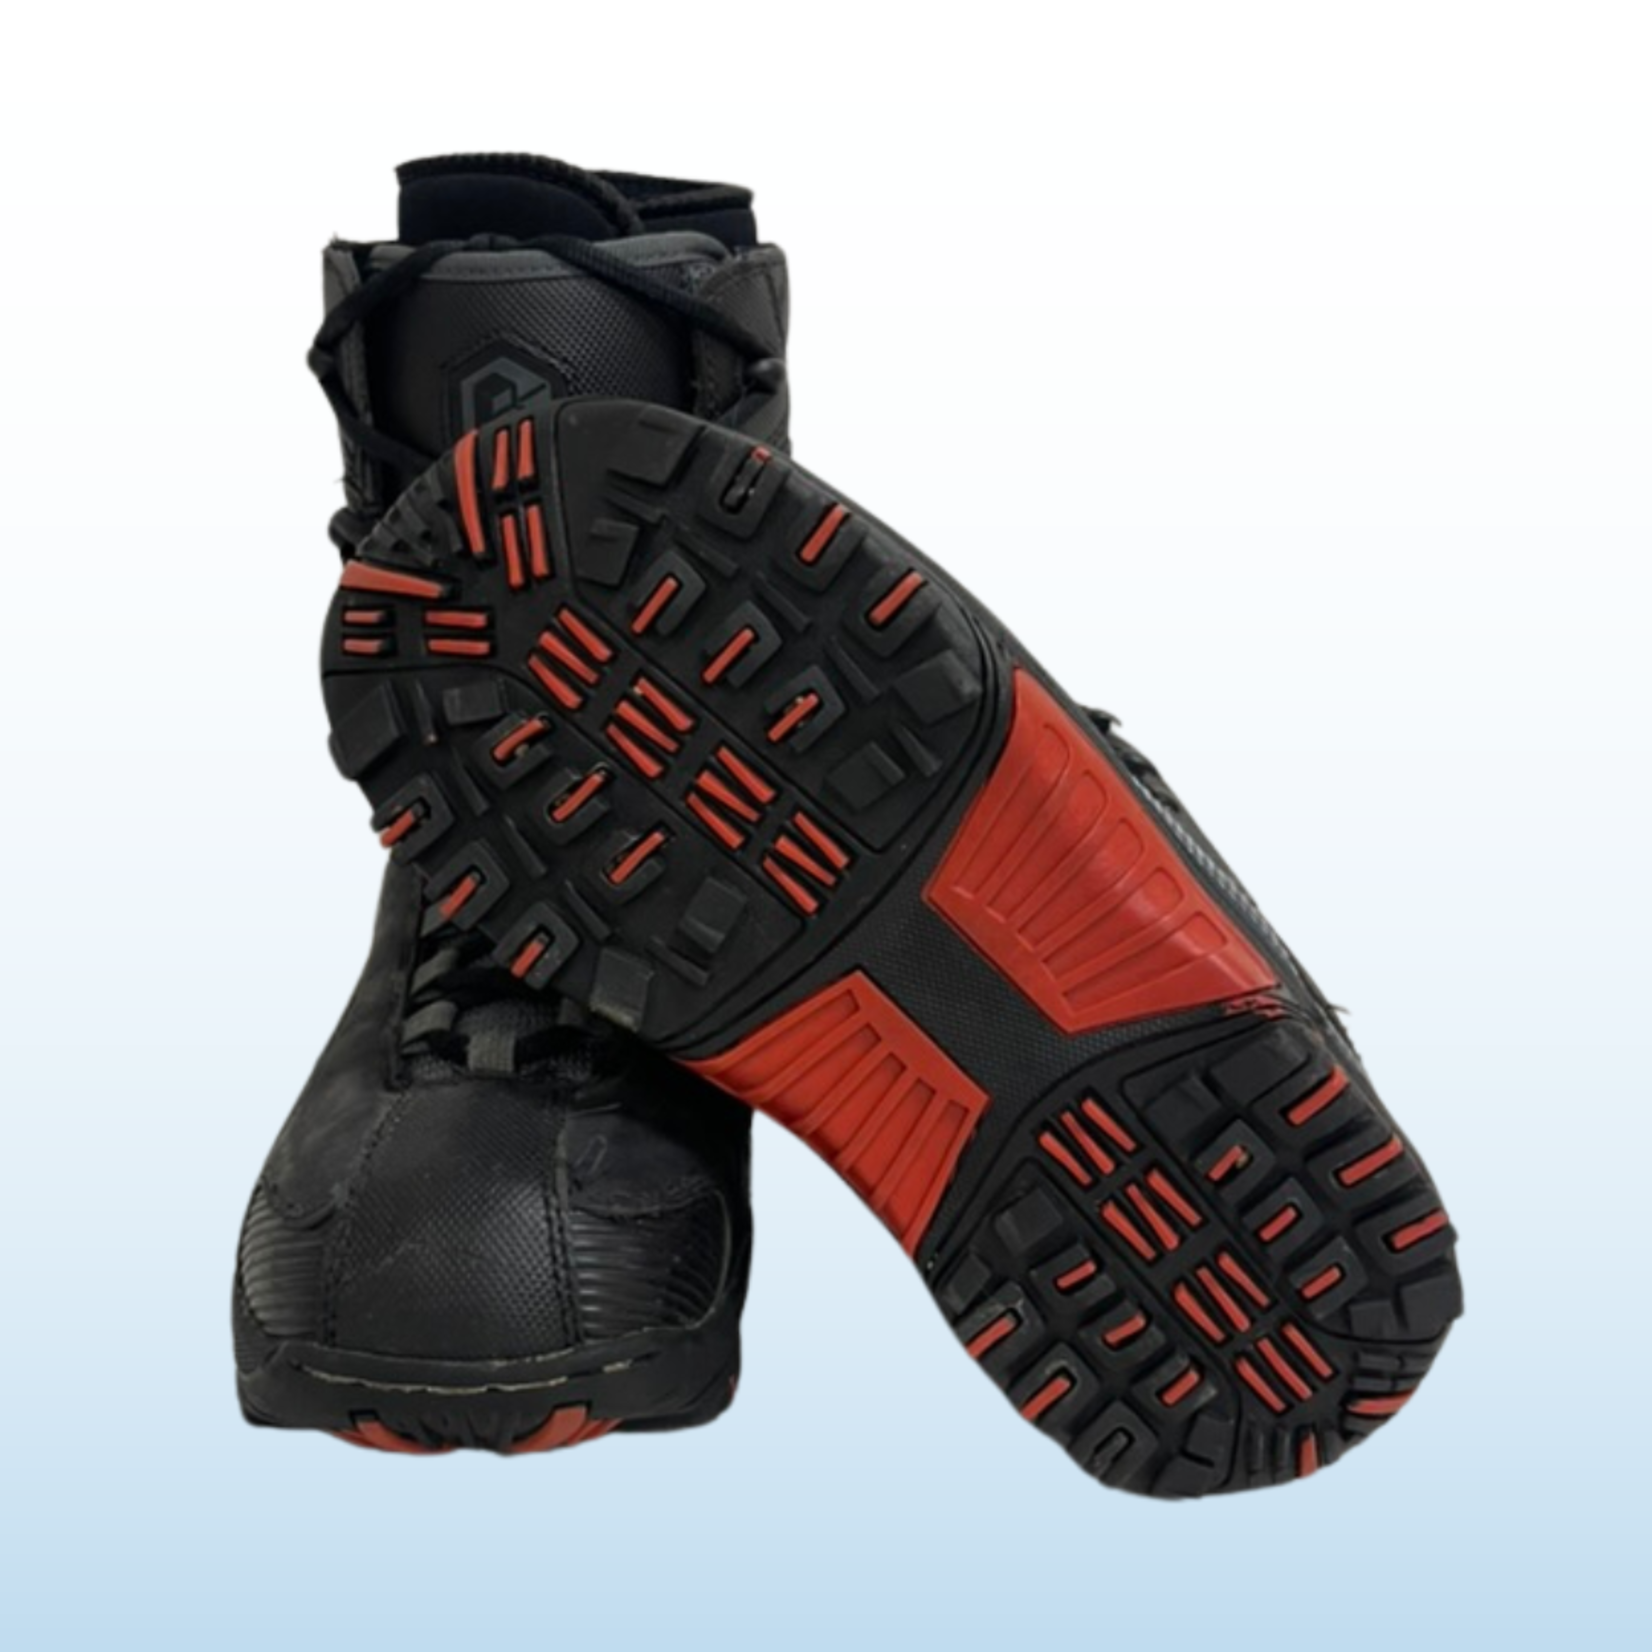 LTD LTD Dare Snowboard Boots, Size 7 Mens